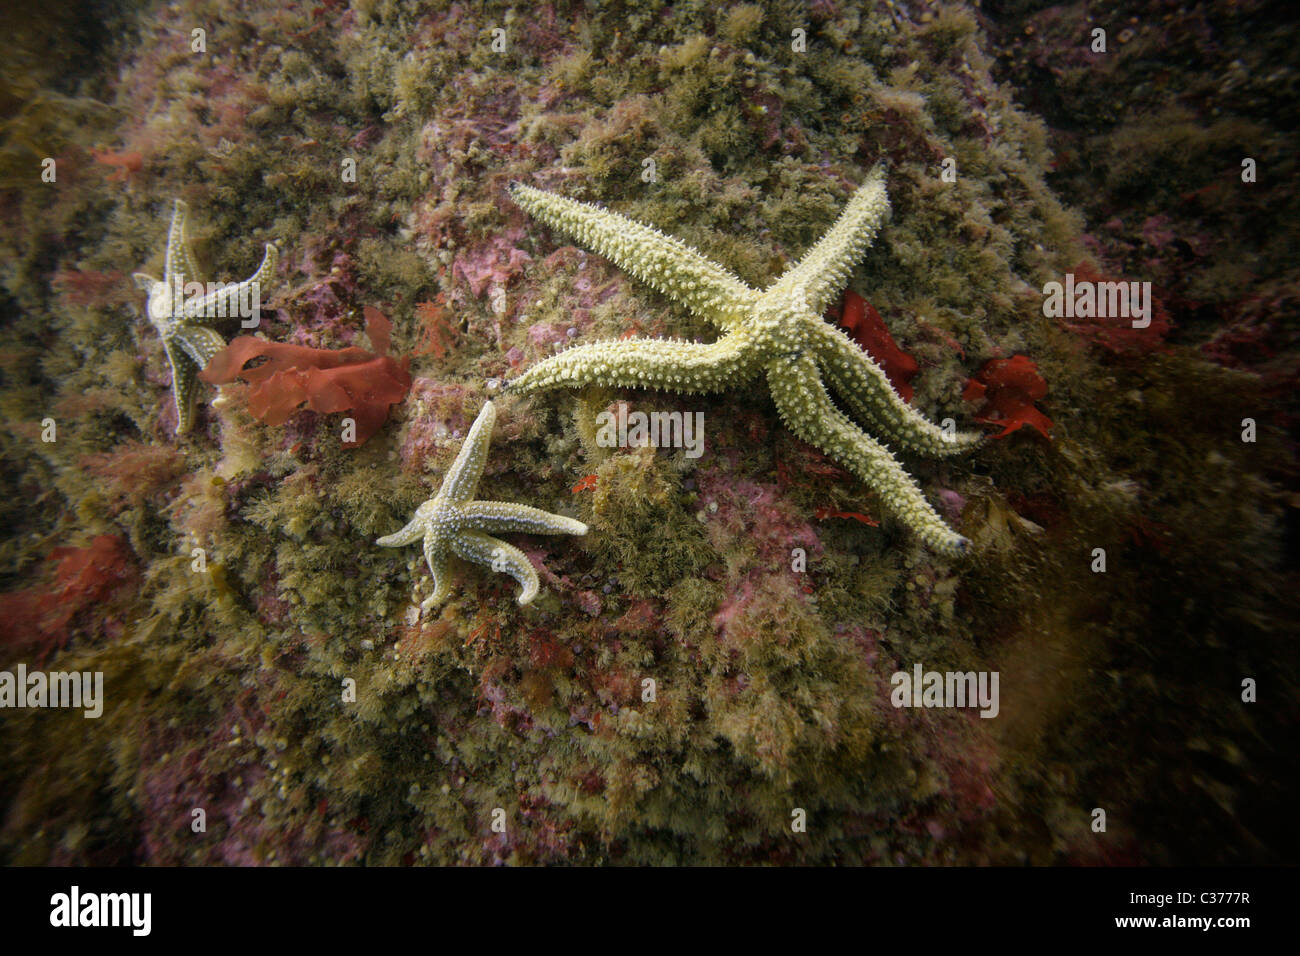 Trois étoiles de mer (Asterias rubens) s'accrocher à un rocher dans les eaux de l'océan Atlantique, dans les Hébrides extérieures en Écosse. Banque D'Images